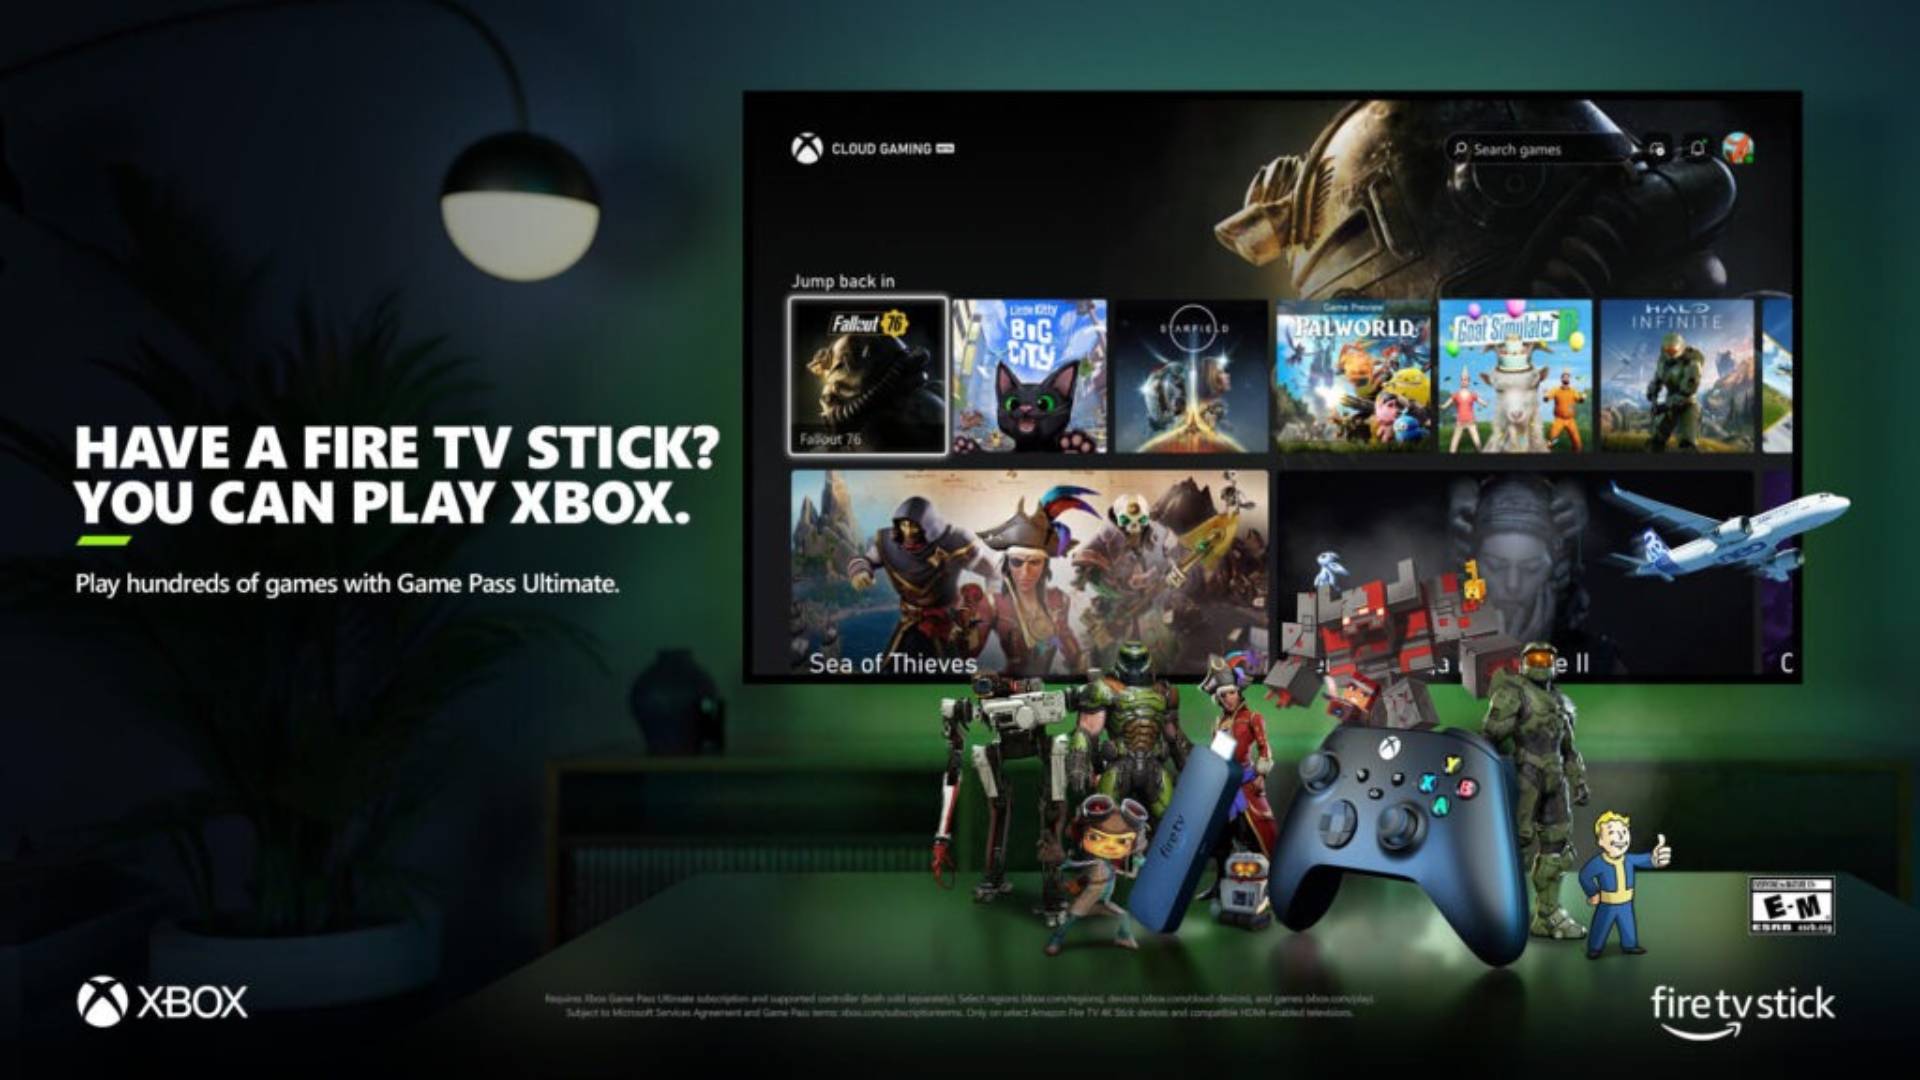 Affiche annonçant la disponibilité de l'application Xbox sur les Fire TV Sticks.